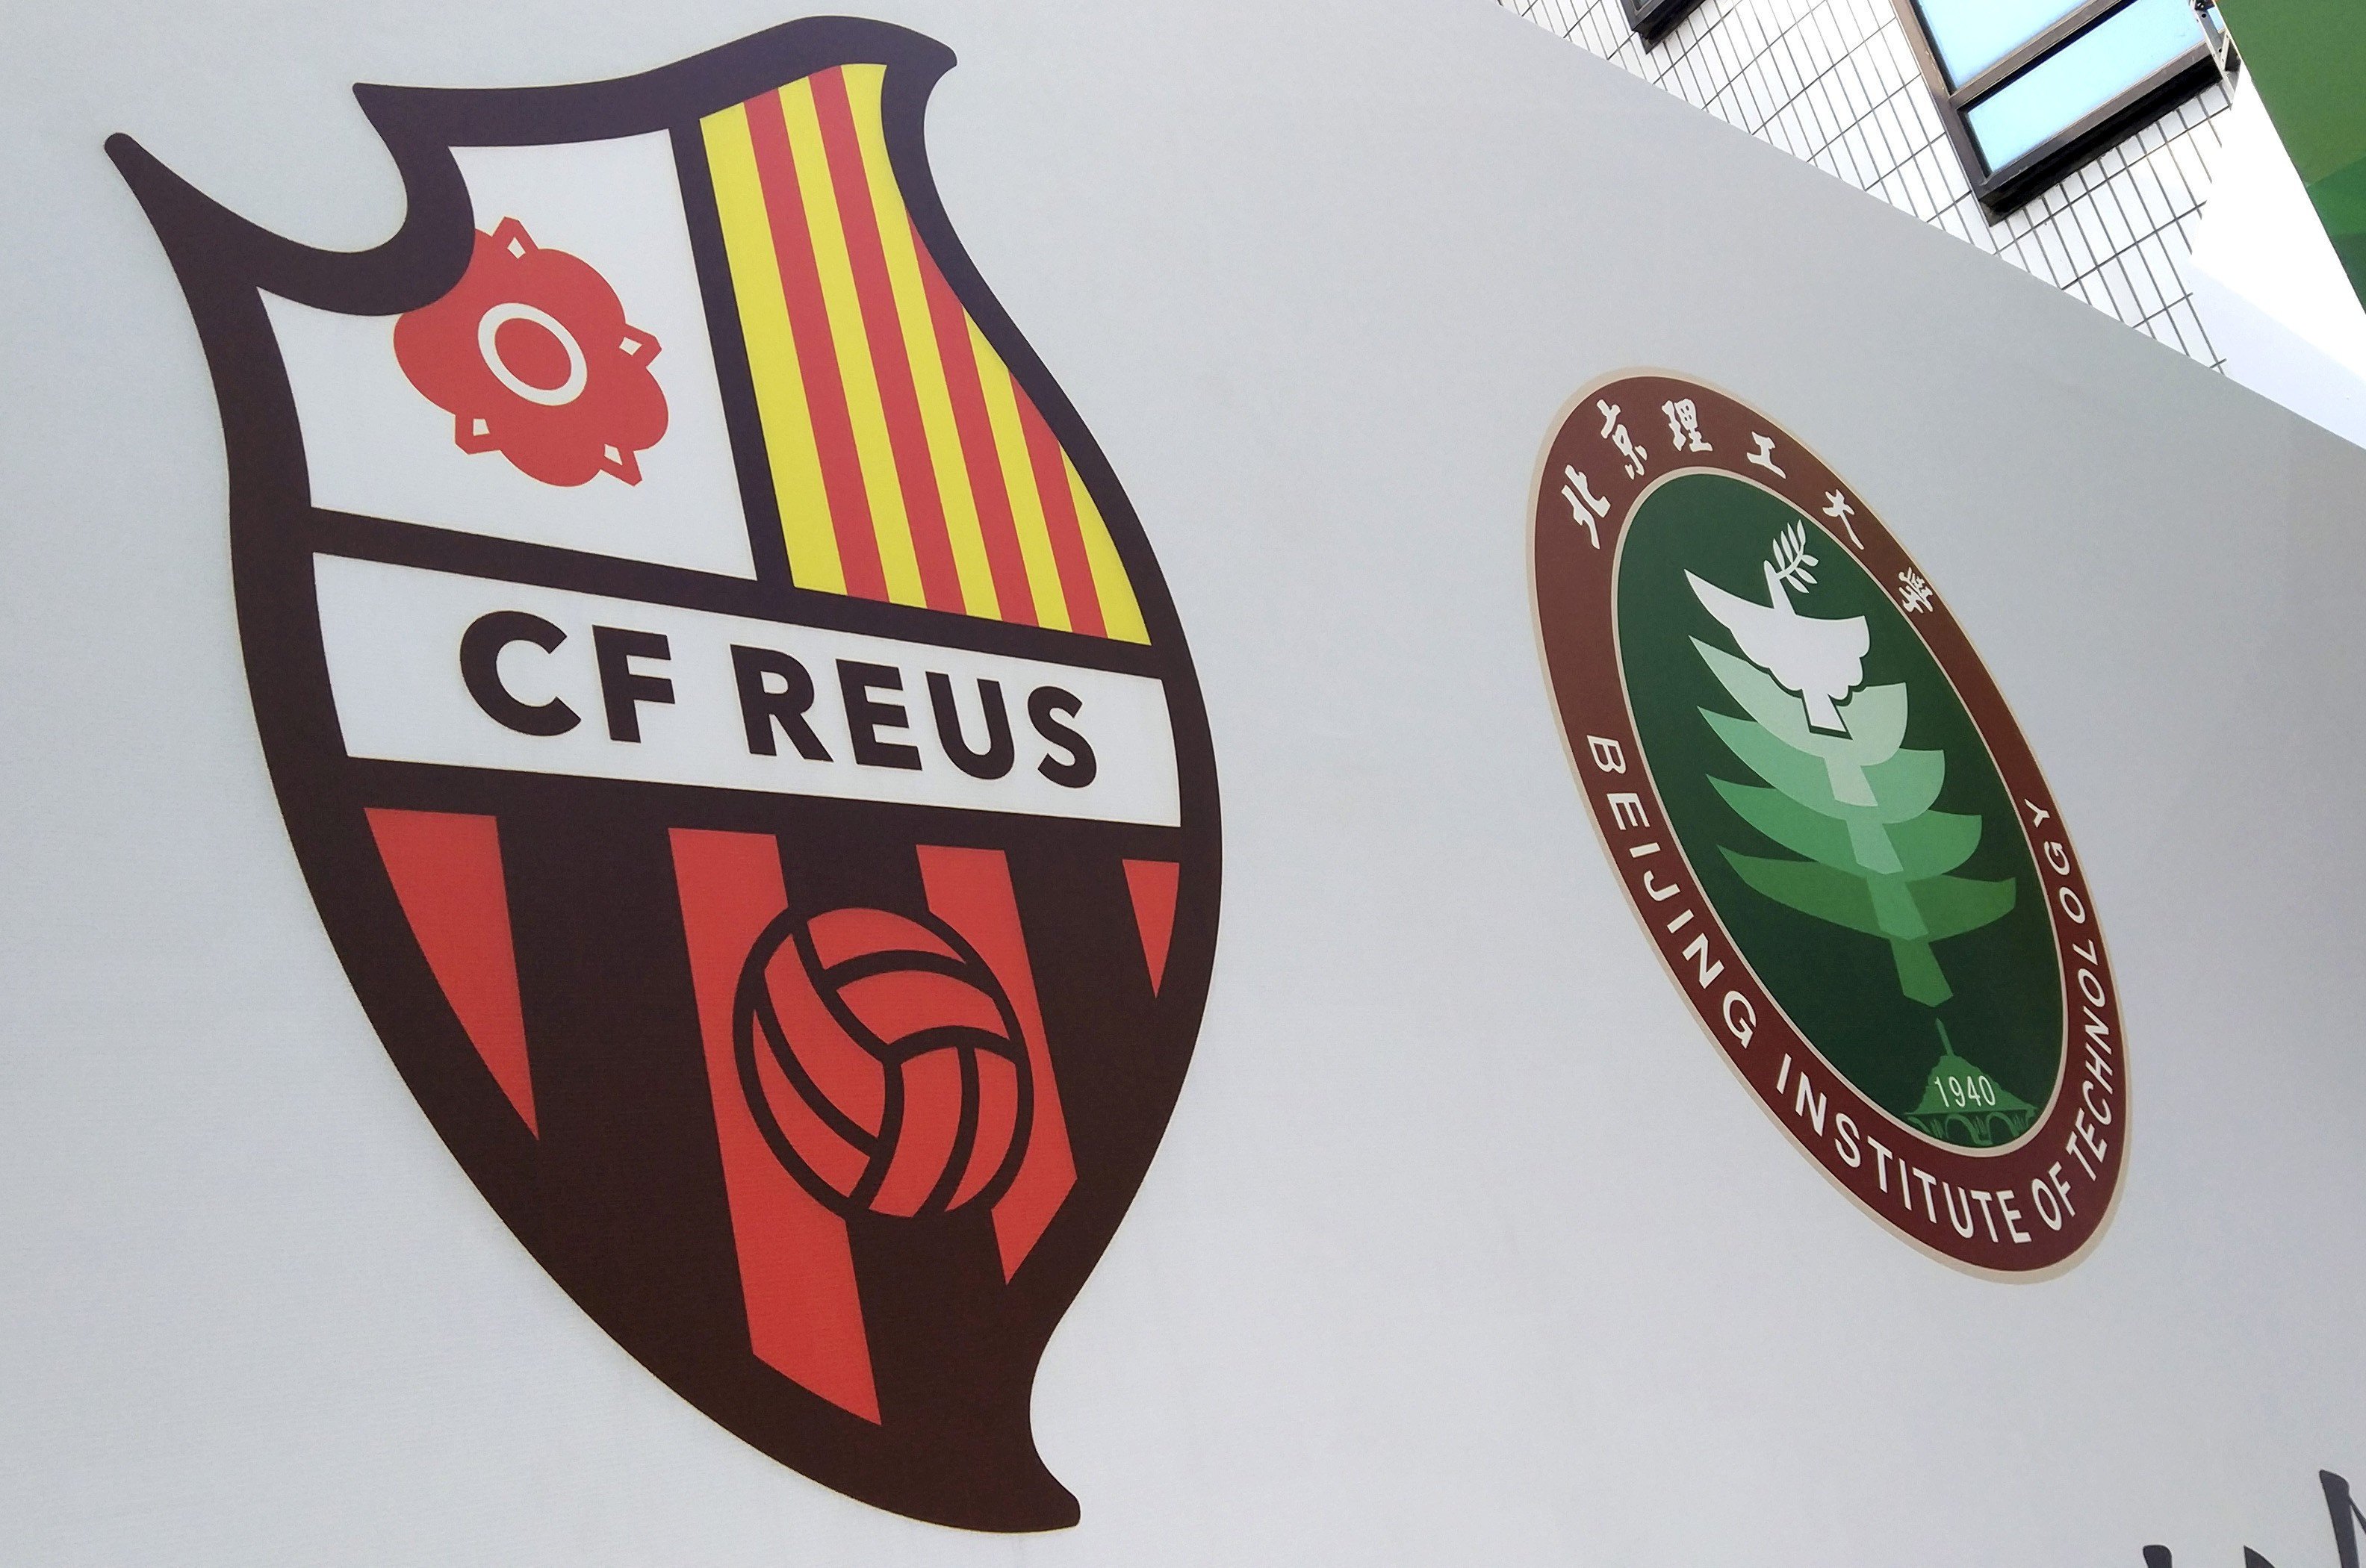 Laporta i Sala i Martín compren part d'un club xinès en nom del Reus